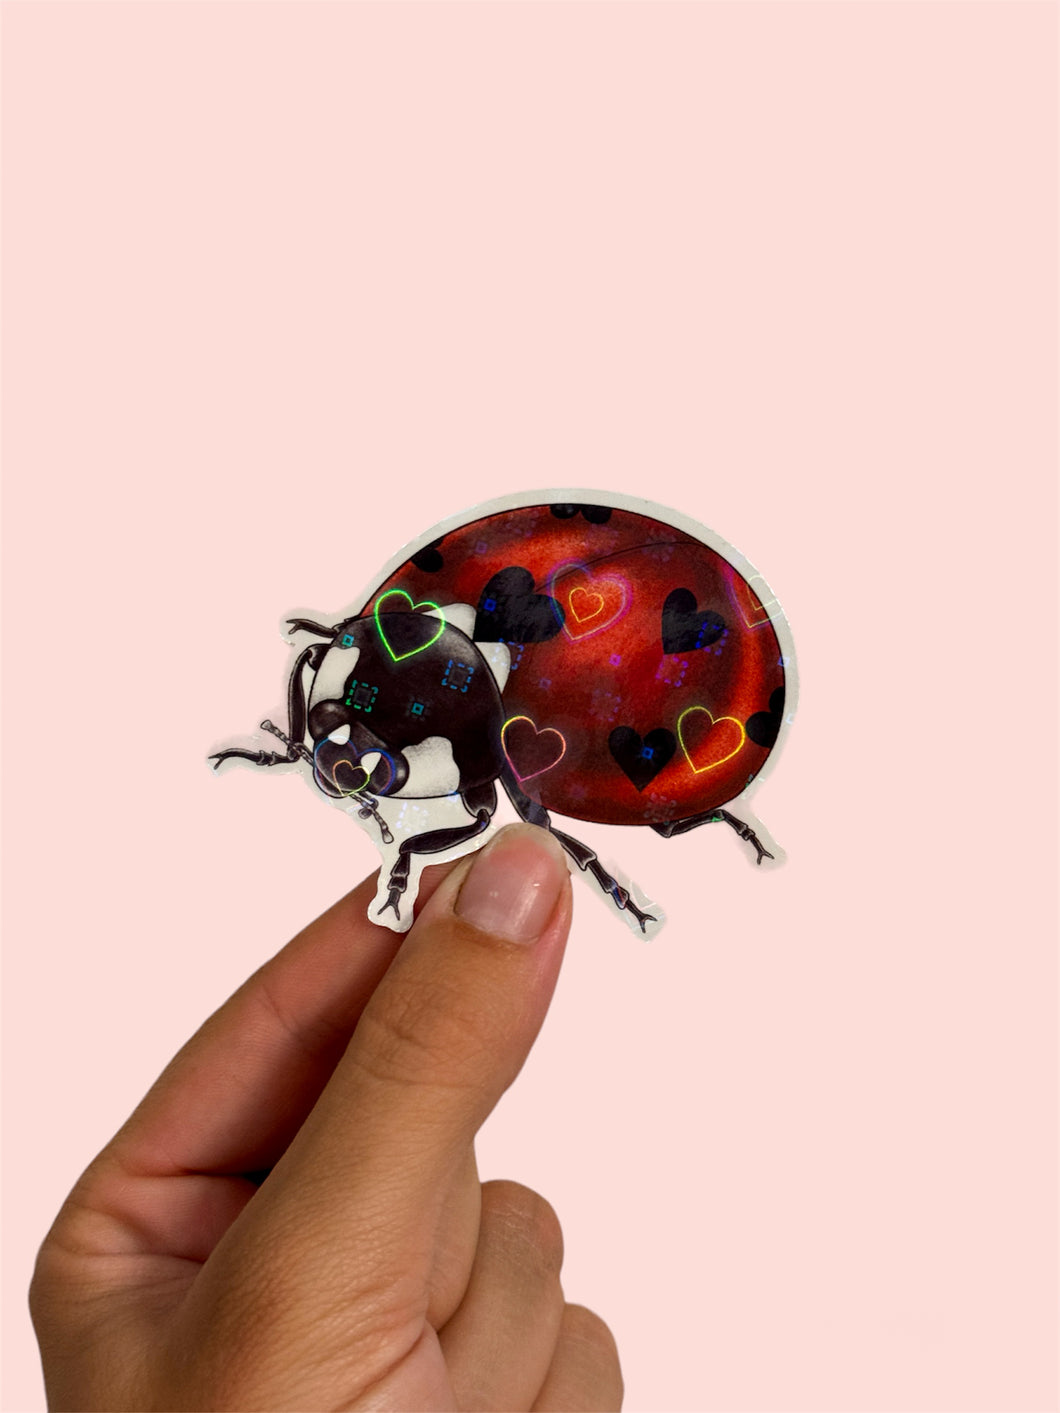 Love Bug Sticker